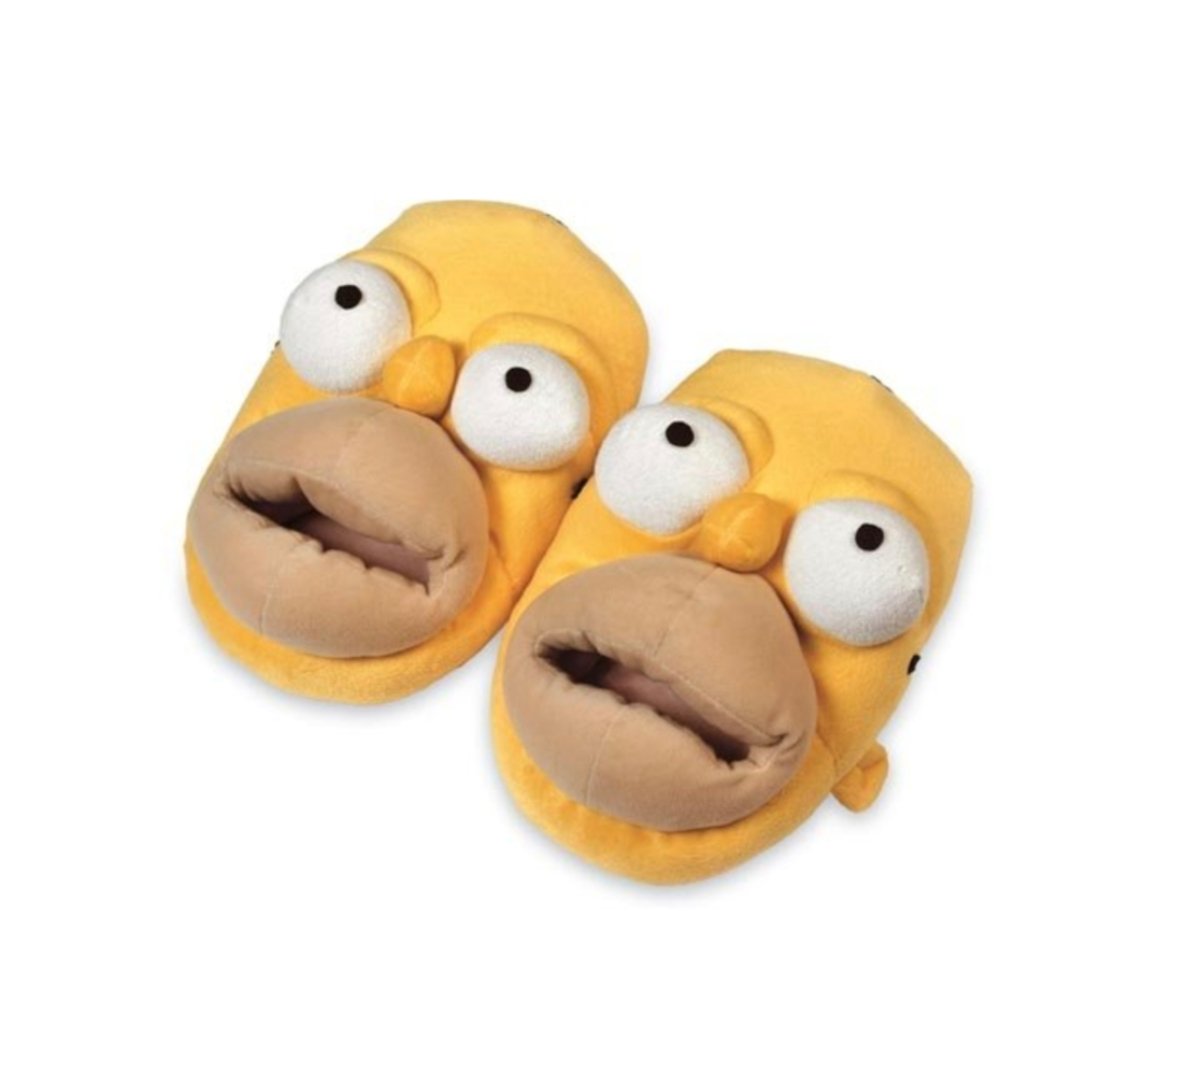 Increíbles zapatillas con la cabeza de Homer Simpson